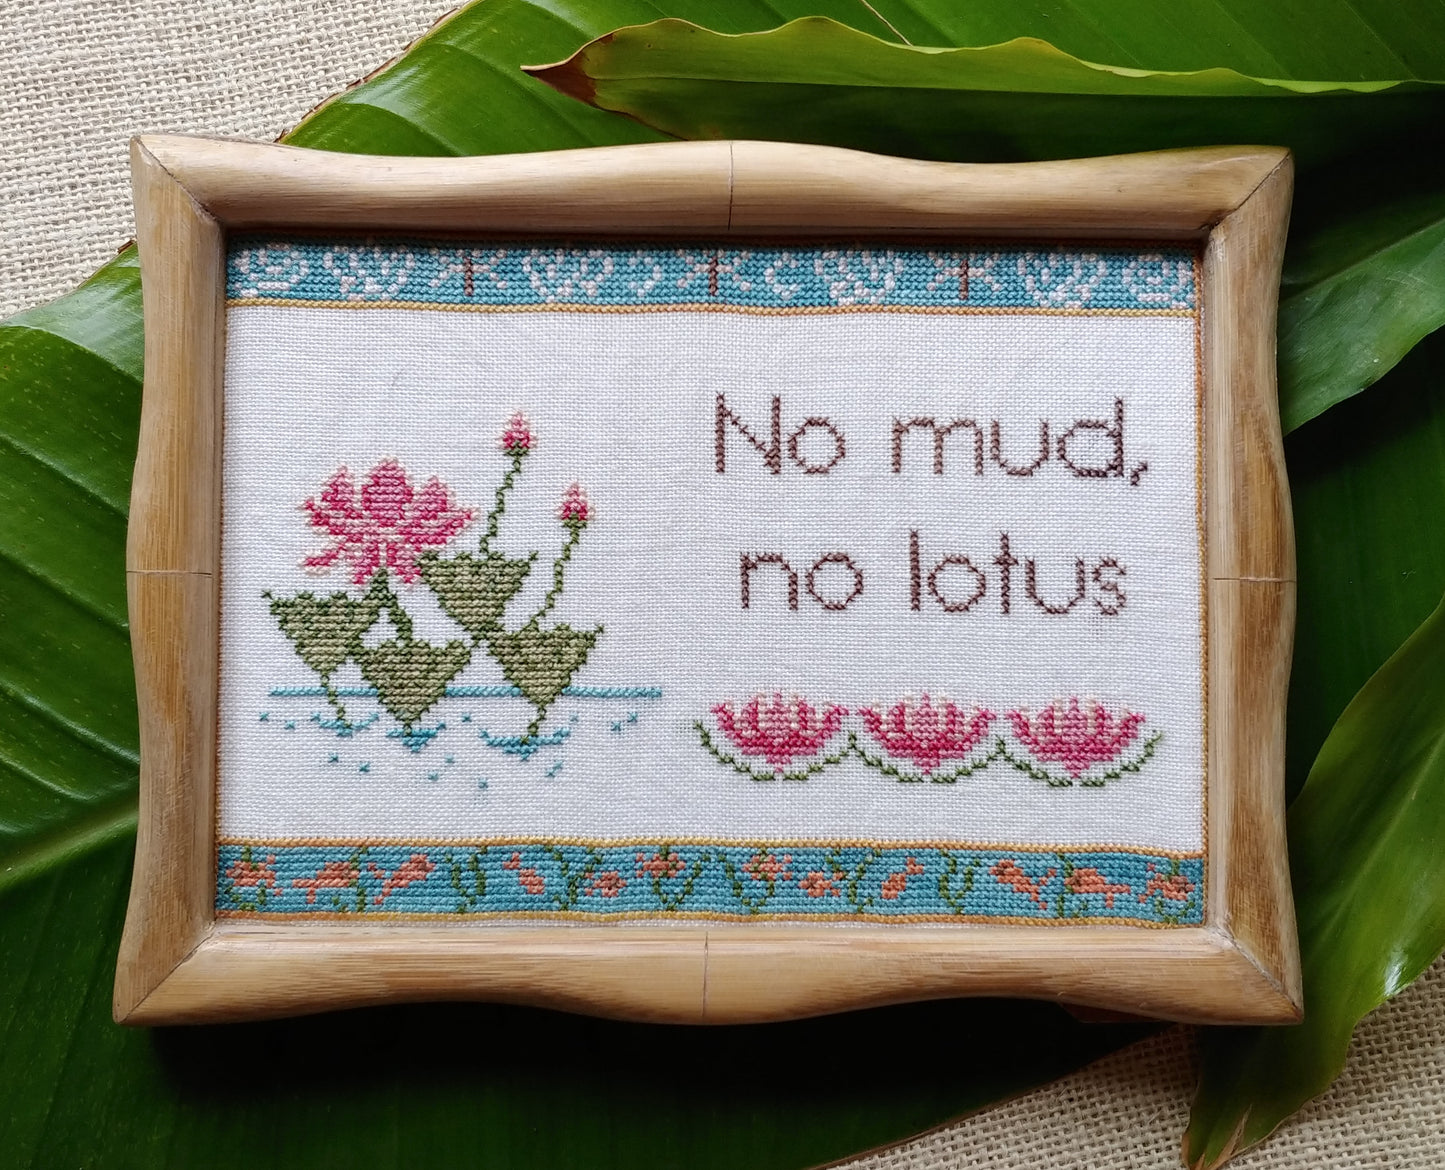 No Mud, No Lotus - Cross-stitch pattern by Mojo Stitches